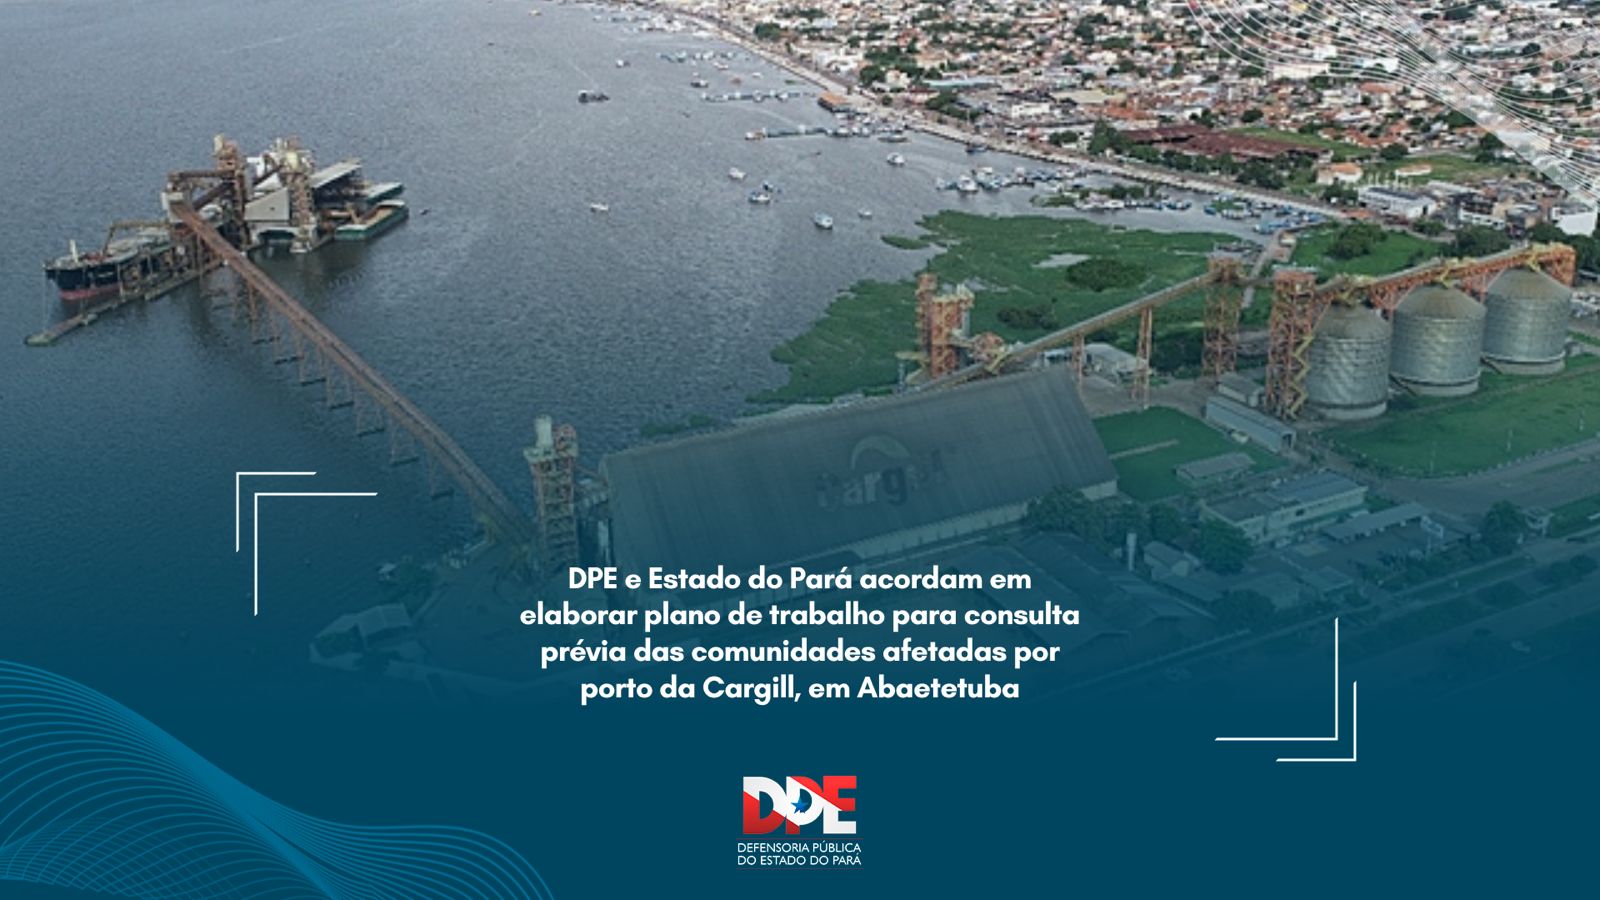 DPE e Estado do Pará acordam em elaborar plano de trabalho para consulta prévia das comunidades afetadas por porto da Cargill, em Abaetetuba